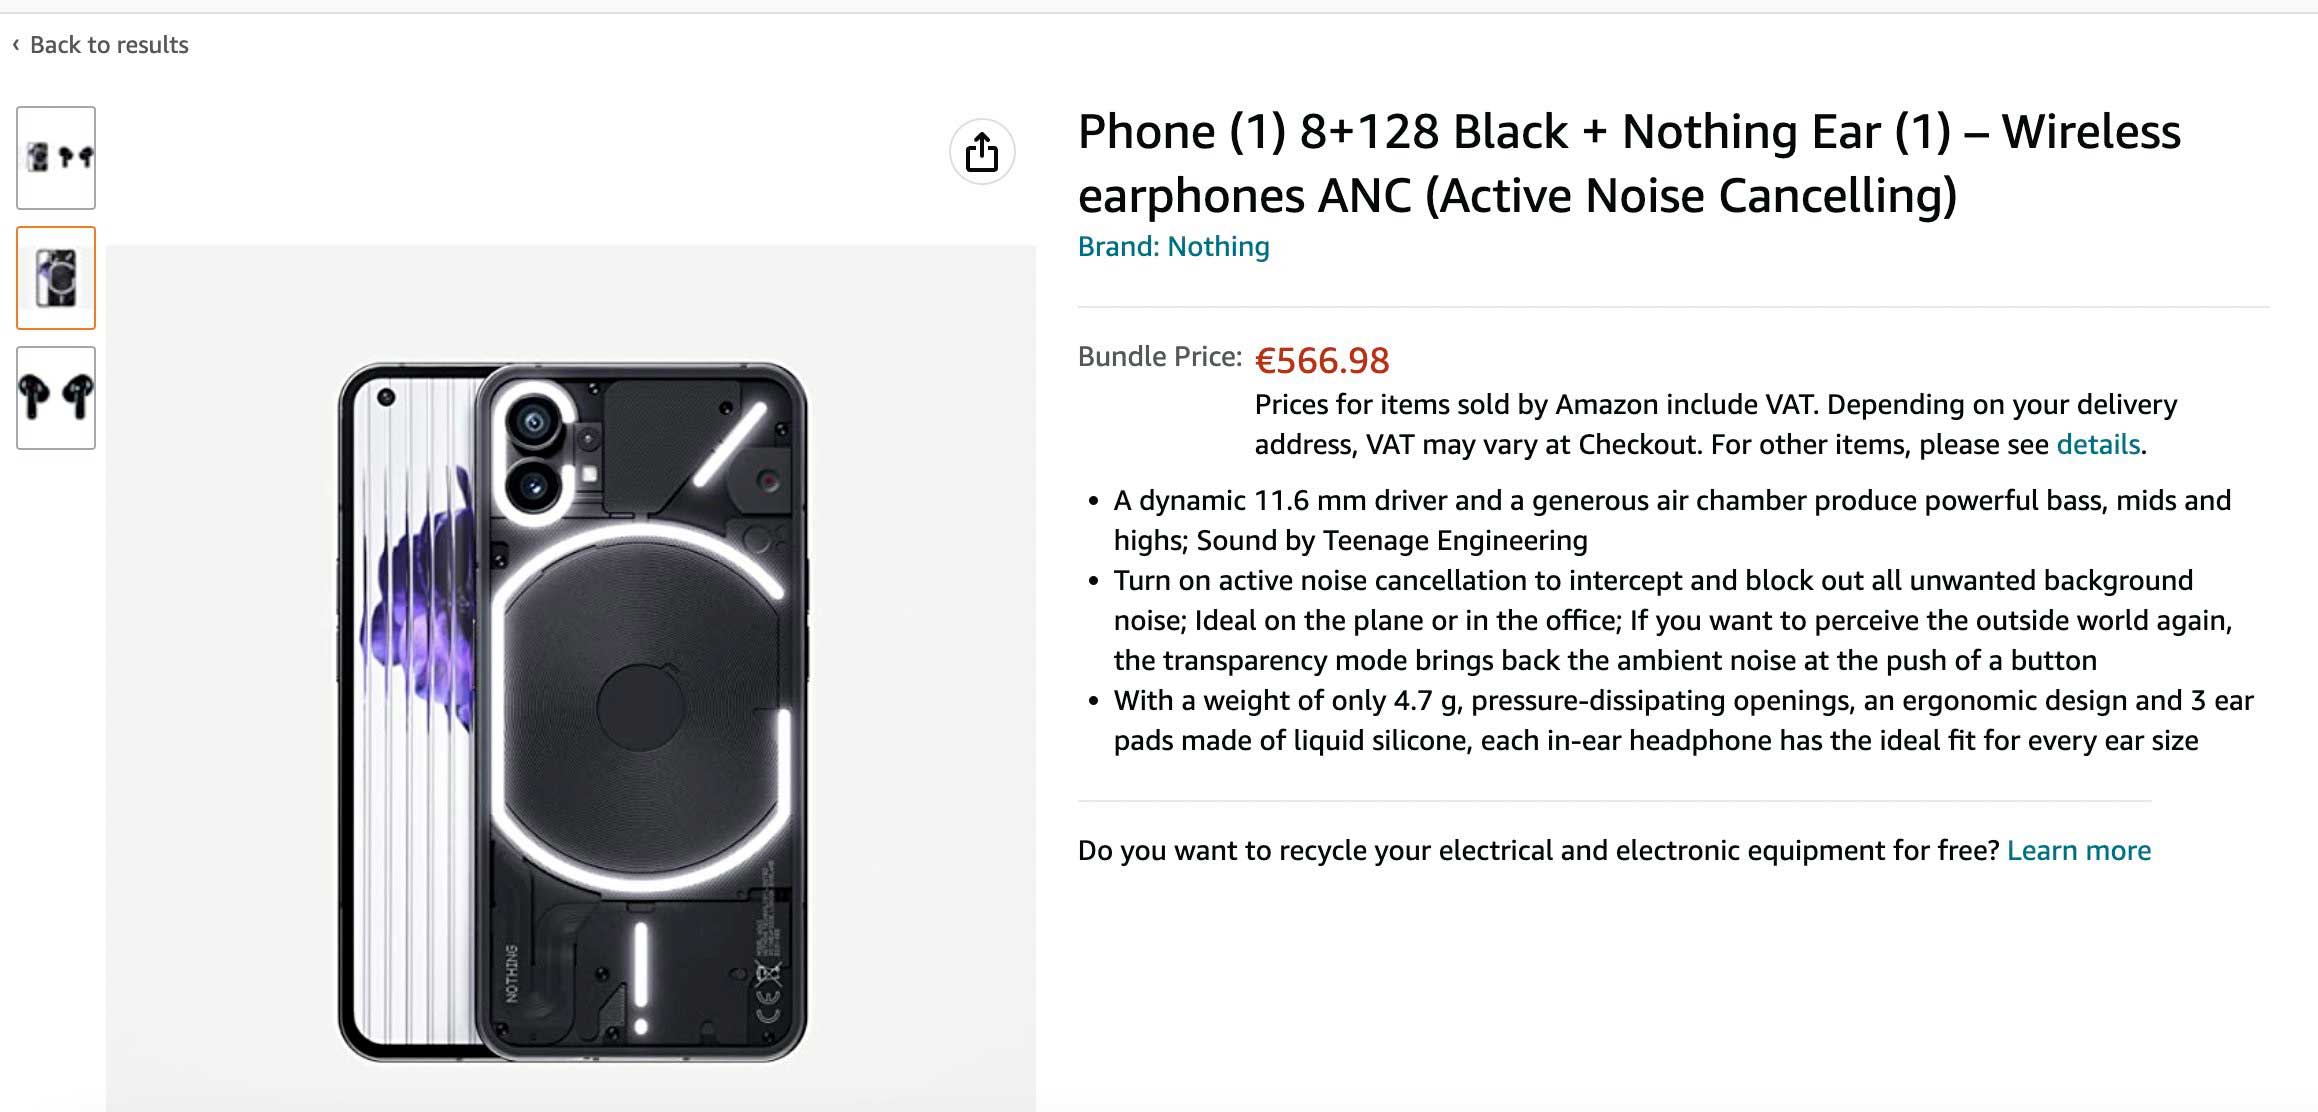 Nuevos datos del Nothing Phone (1), incluyendo posibles precios en Europa 35